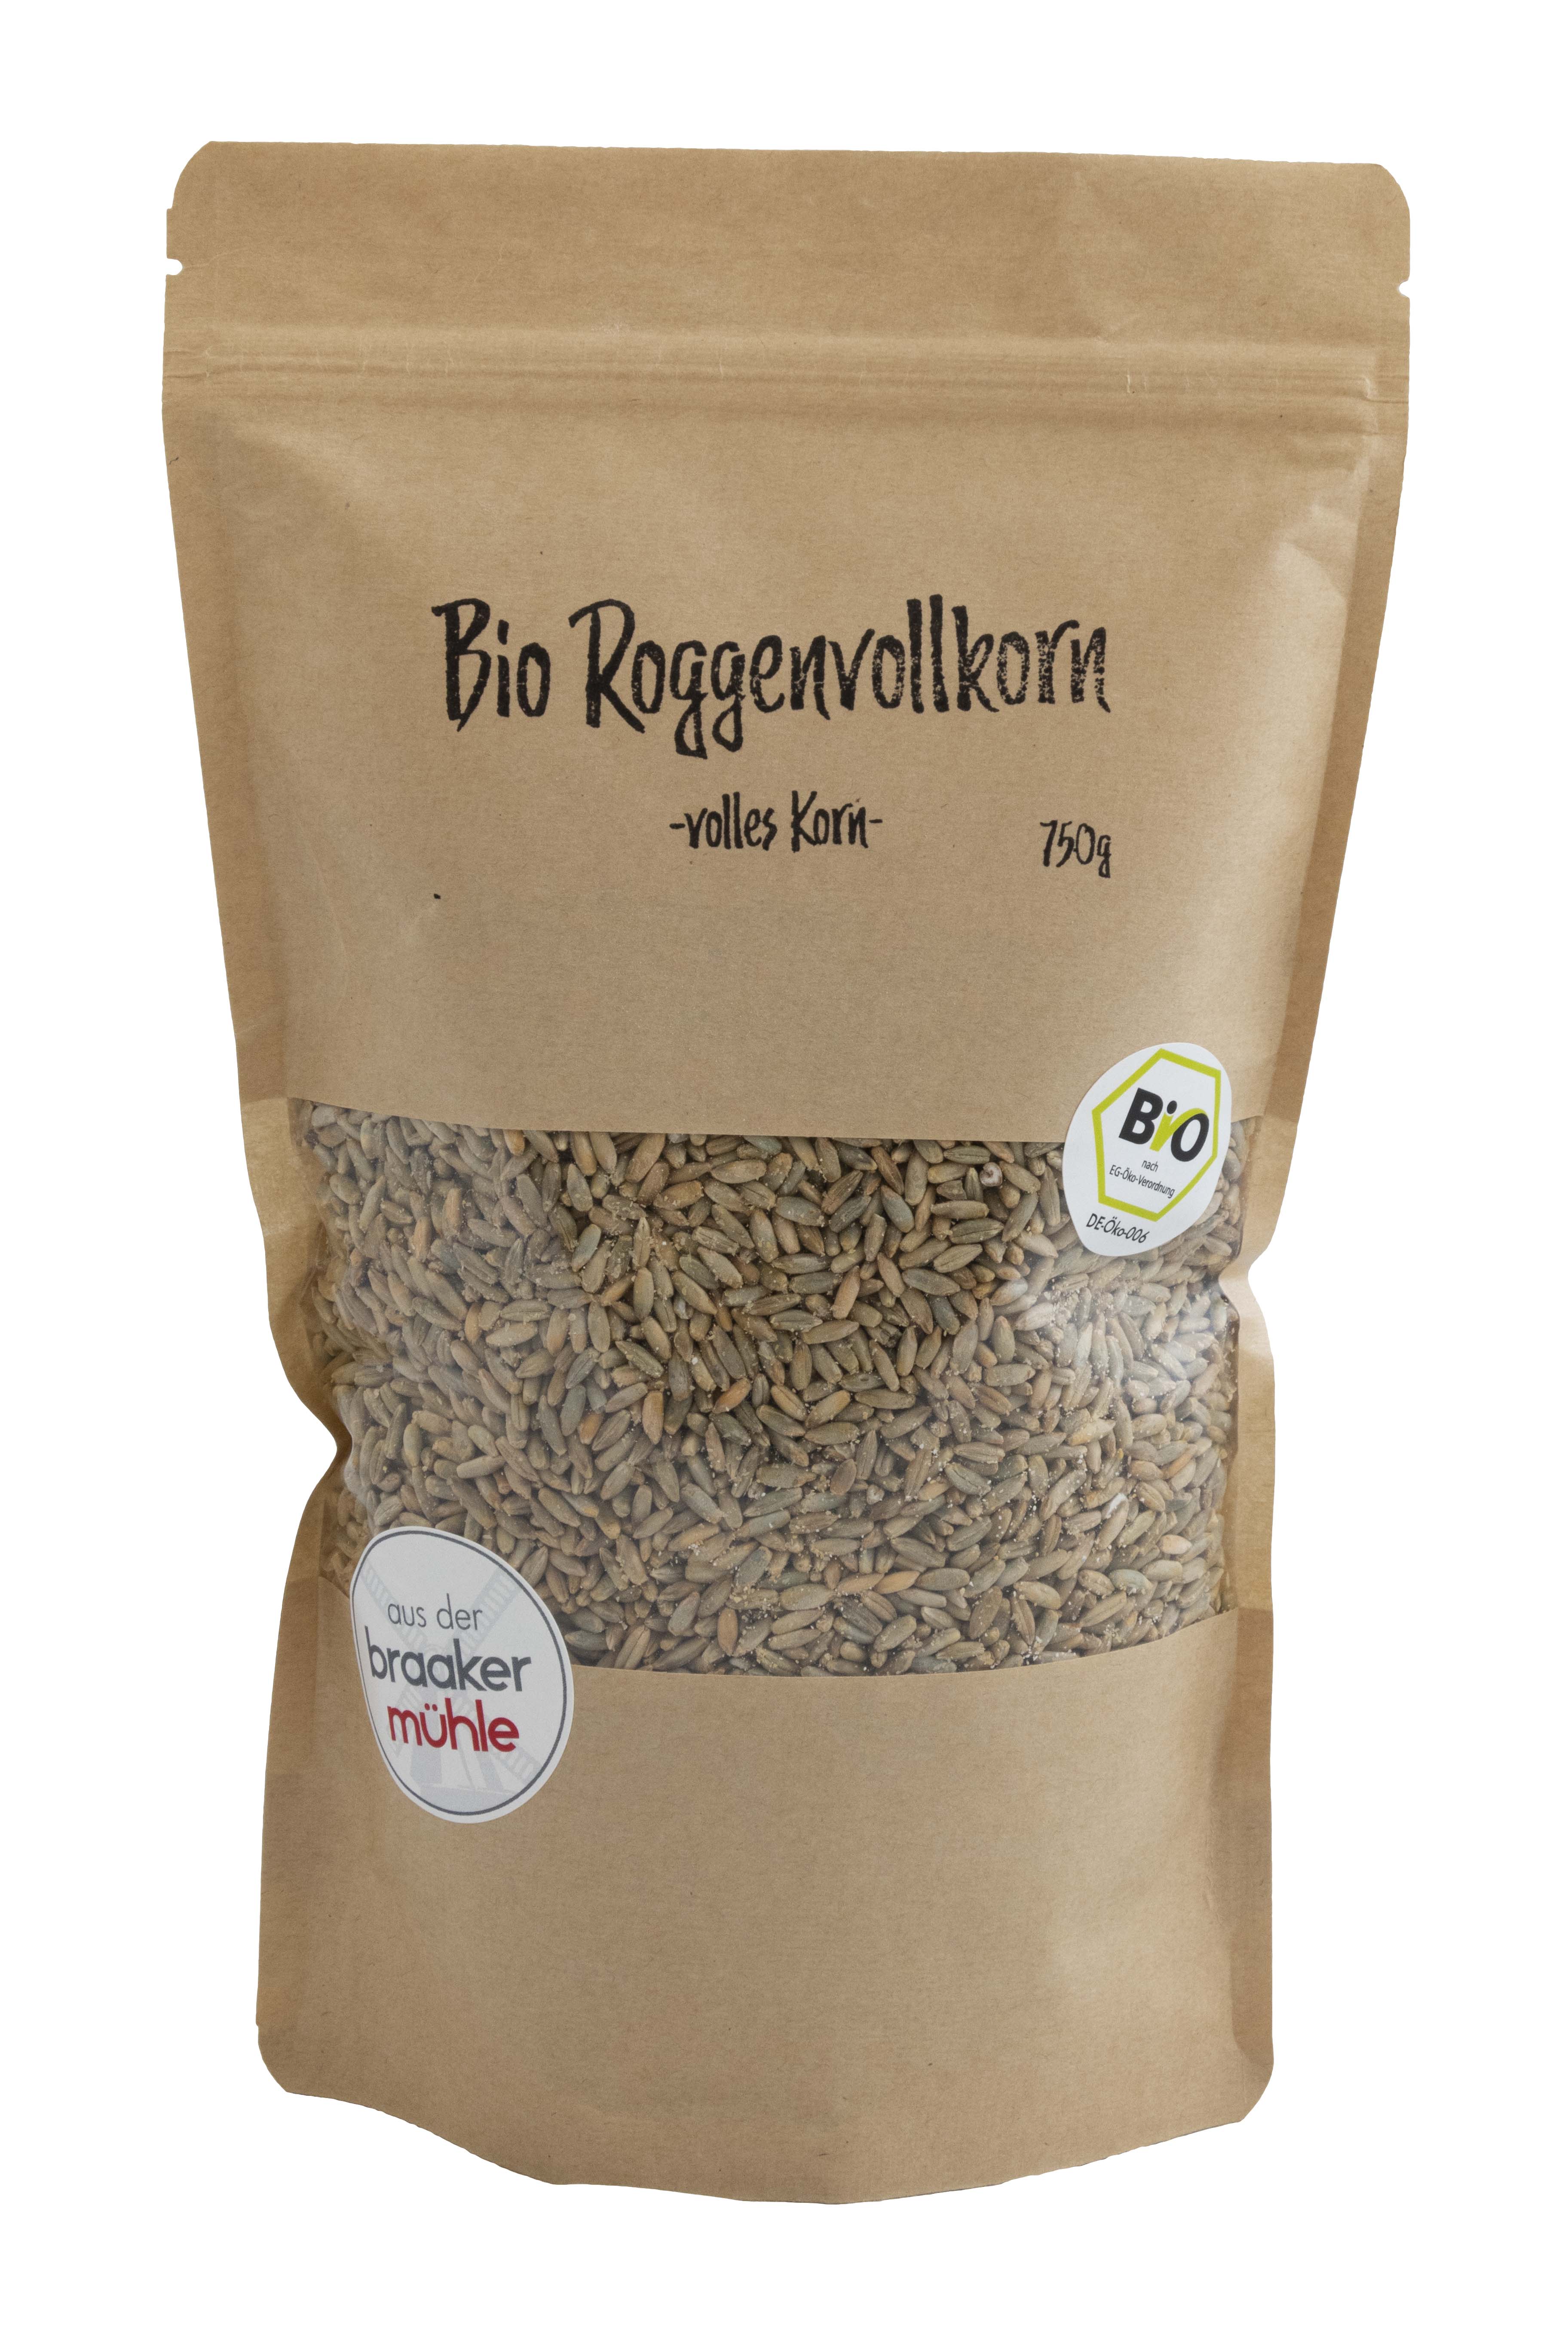 Bio-Roggenvollkorn volles Korn 750 g 